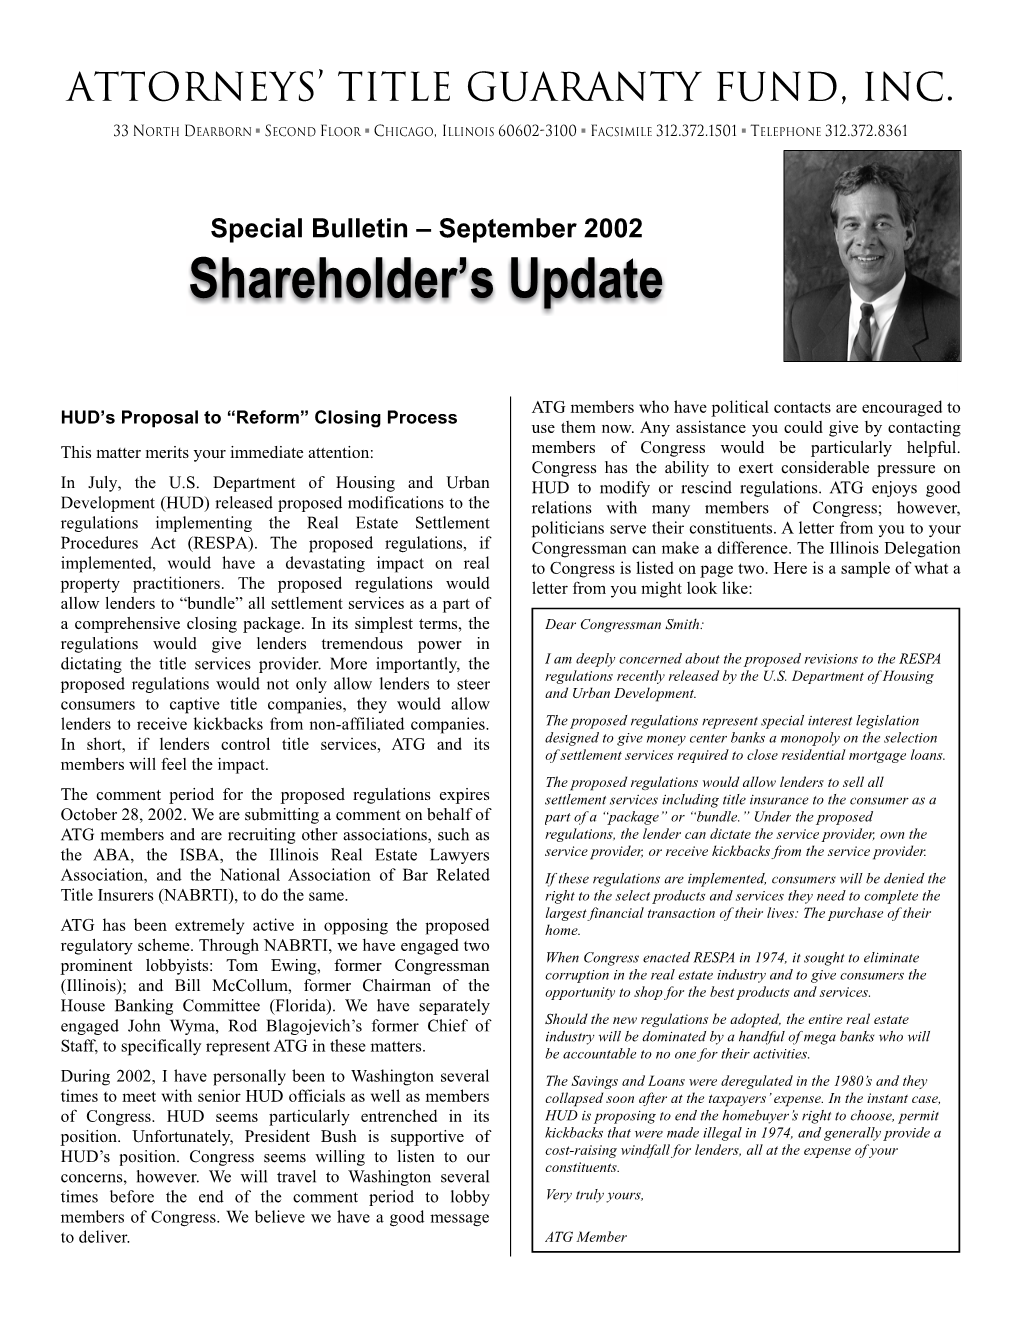 Shareholder's Update